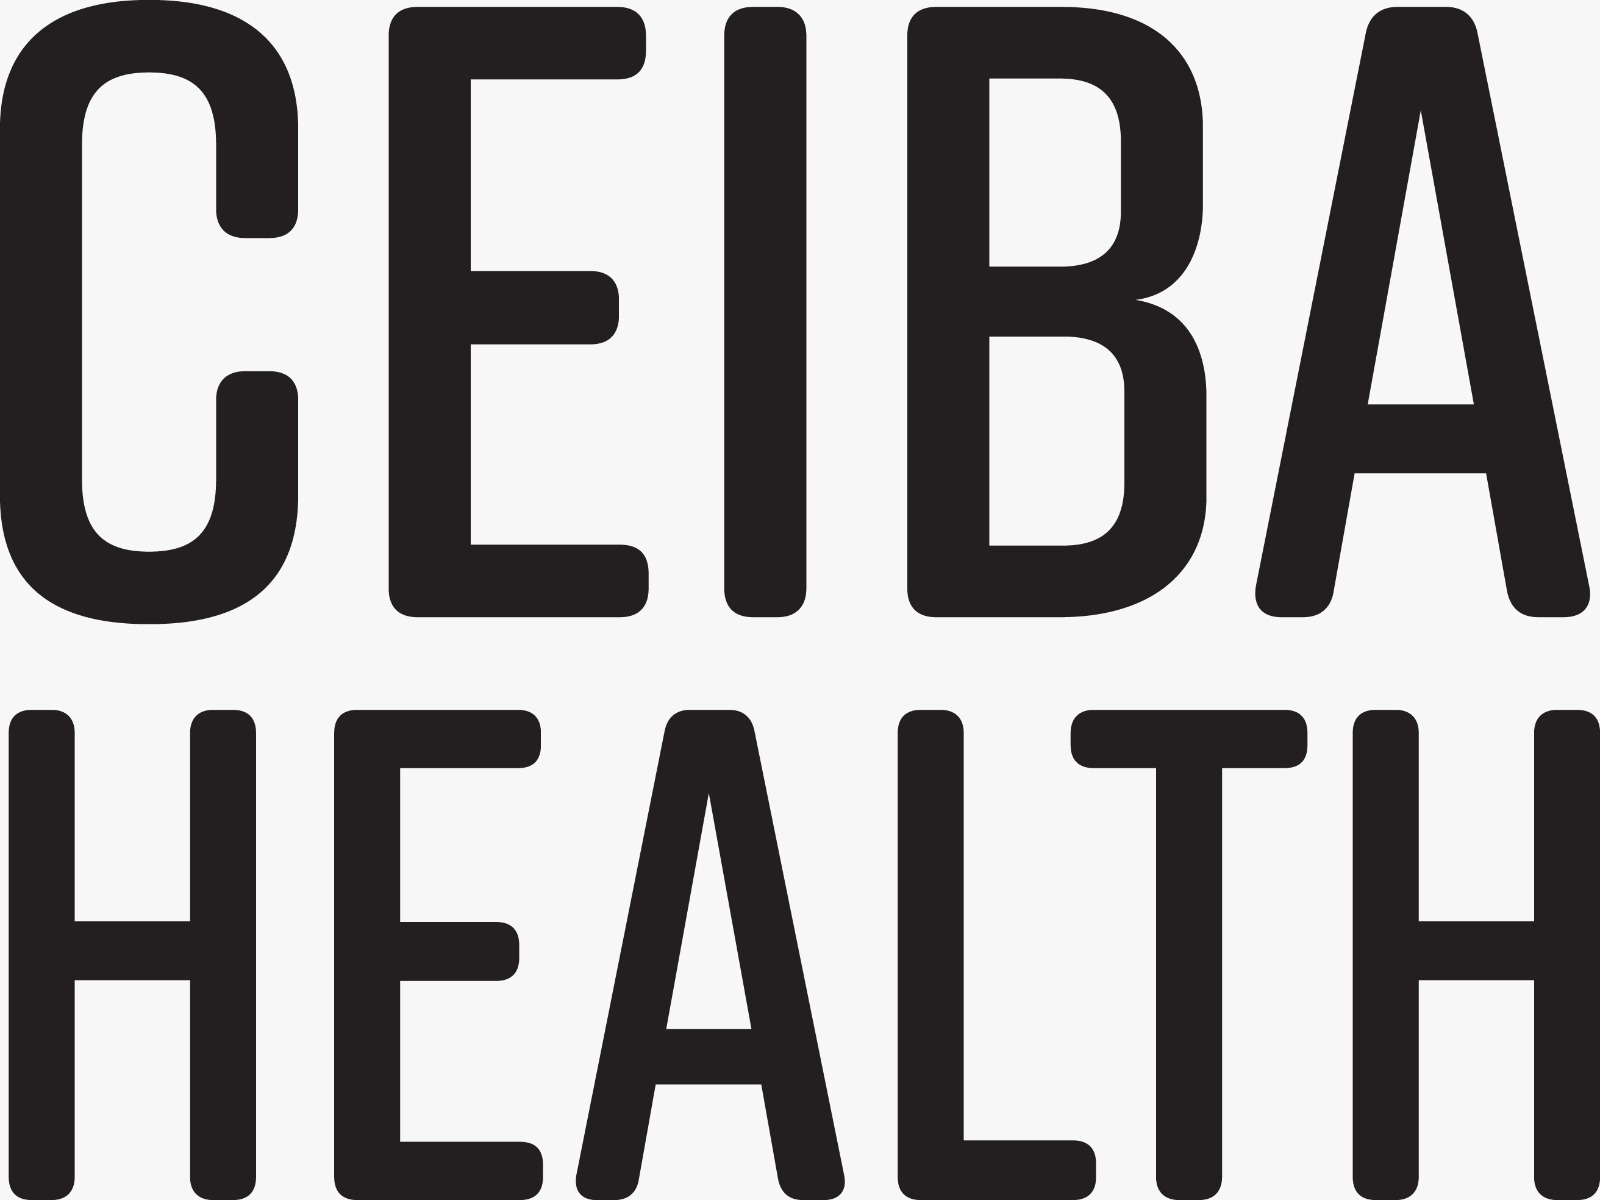 Ceiba Healthcare US Inc.